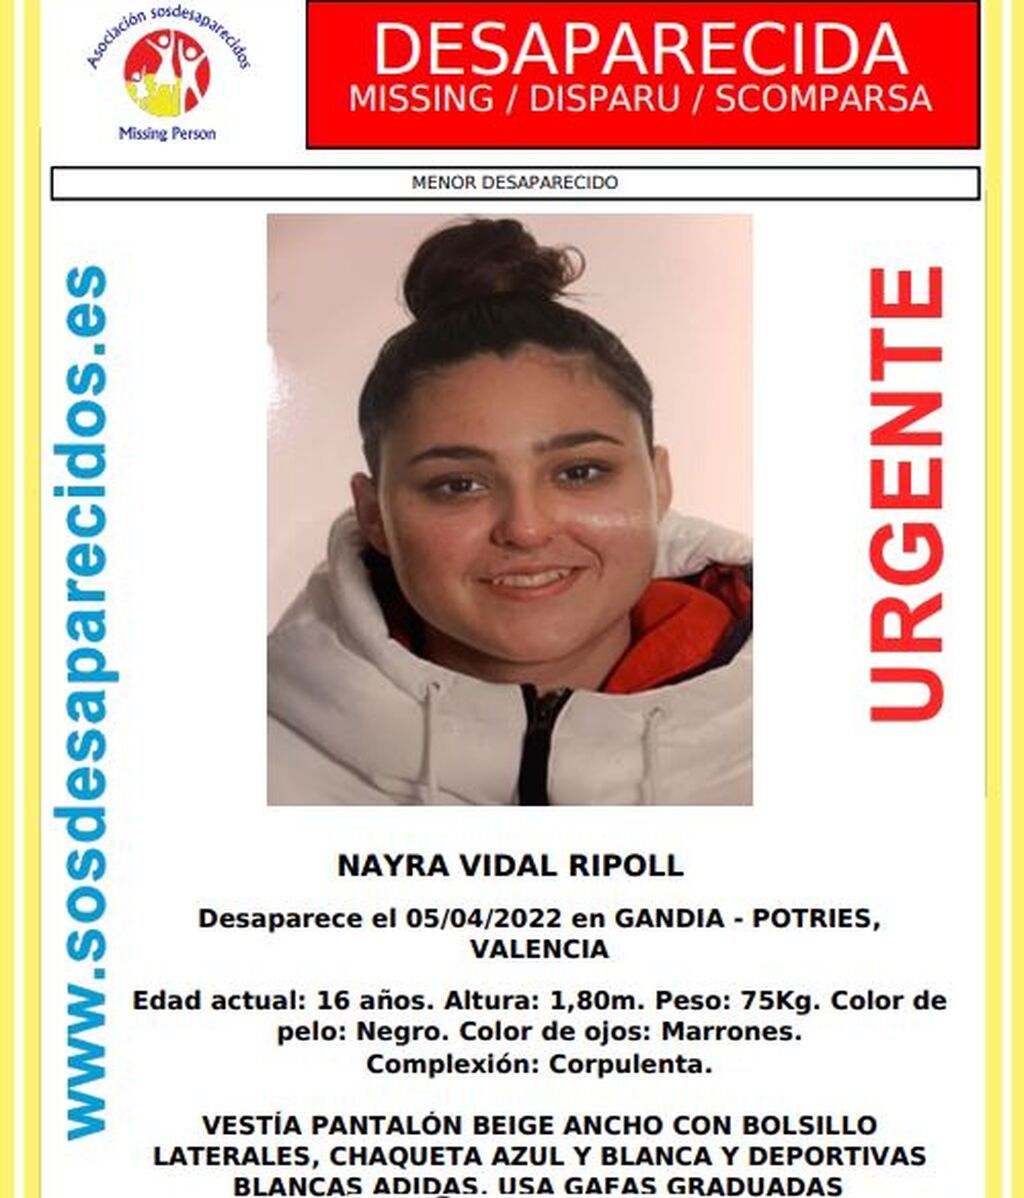 Nayra Vidal Ripoll, de 16 años, menor desaparecida en Gandía